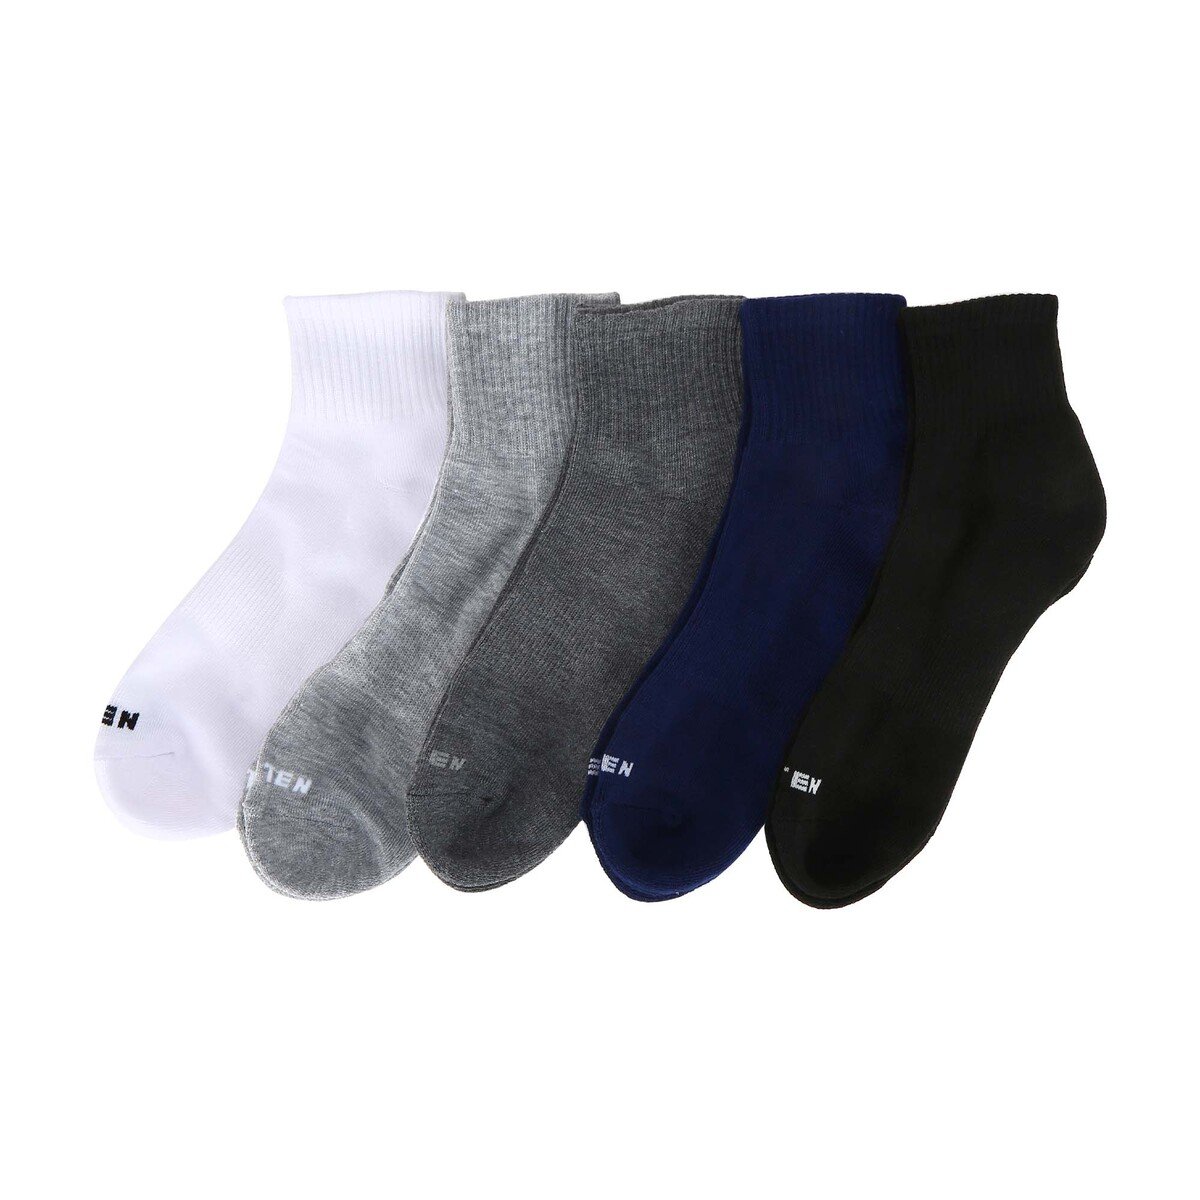 Eten Men's Ankle Socks ETES-11 5Pc Set Assorted Colors Online at Best ...